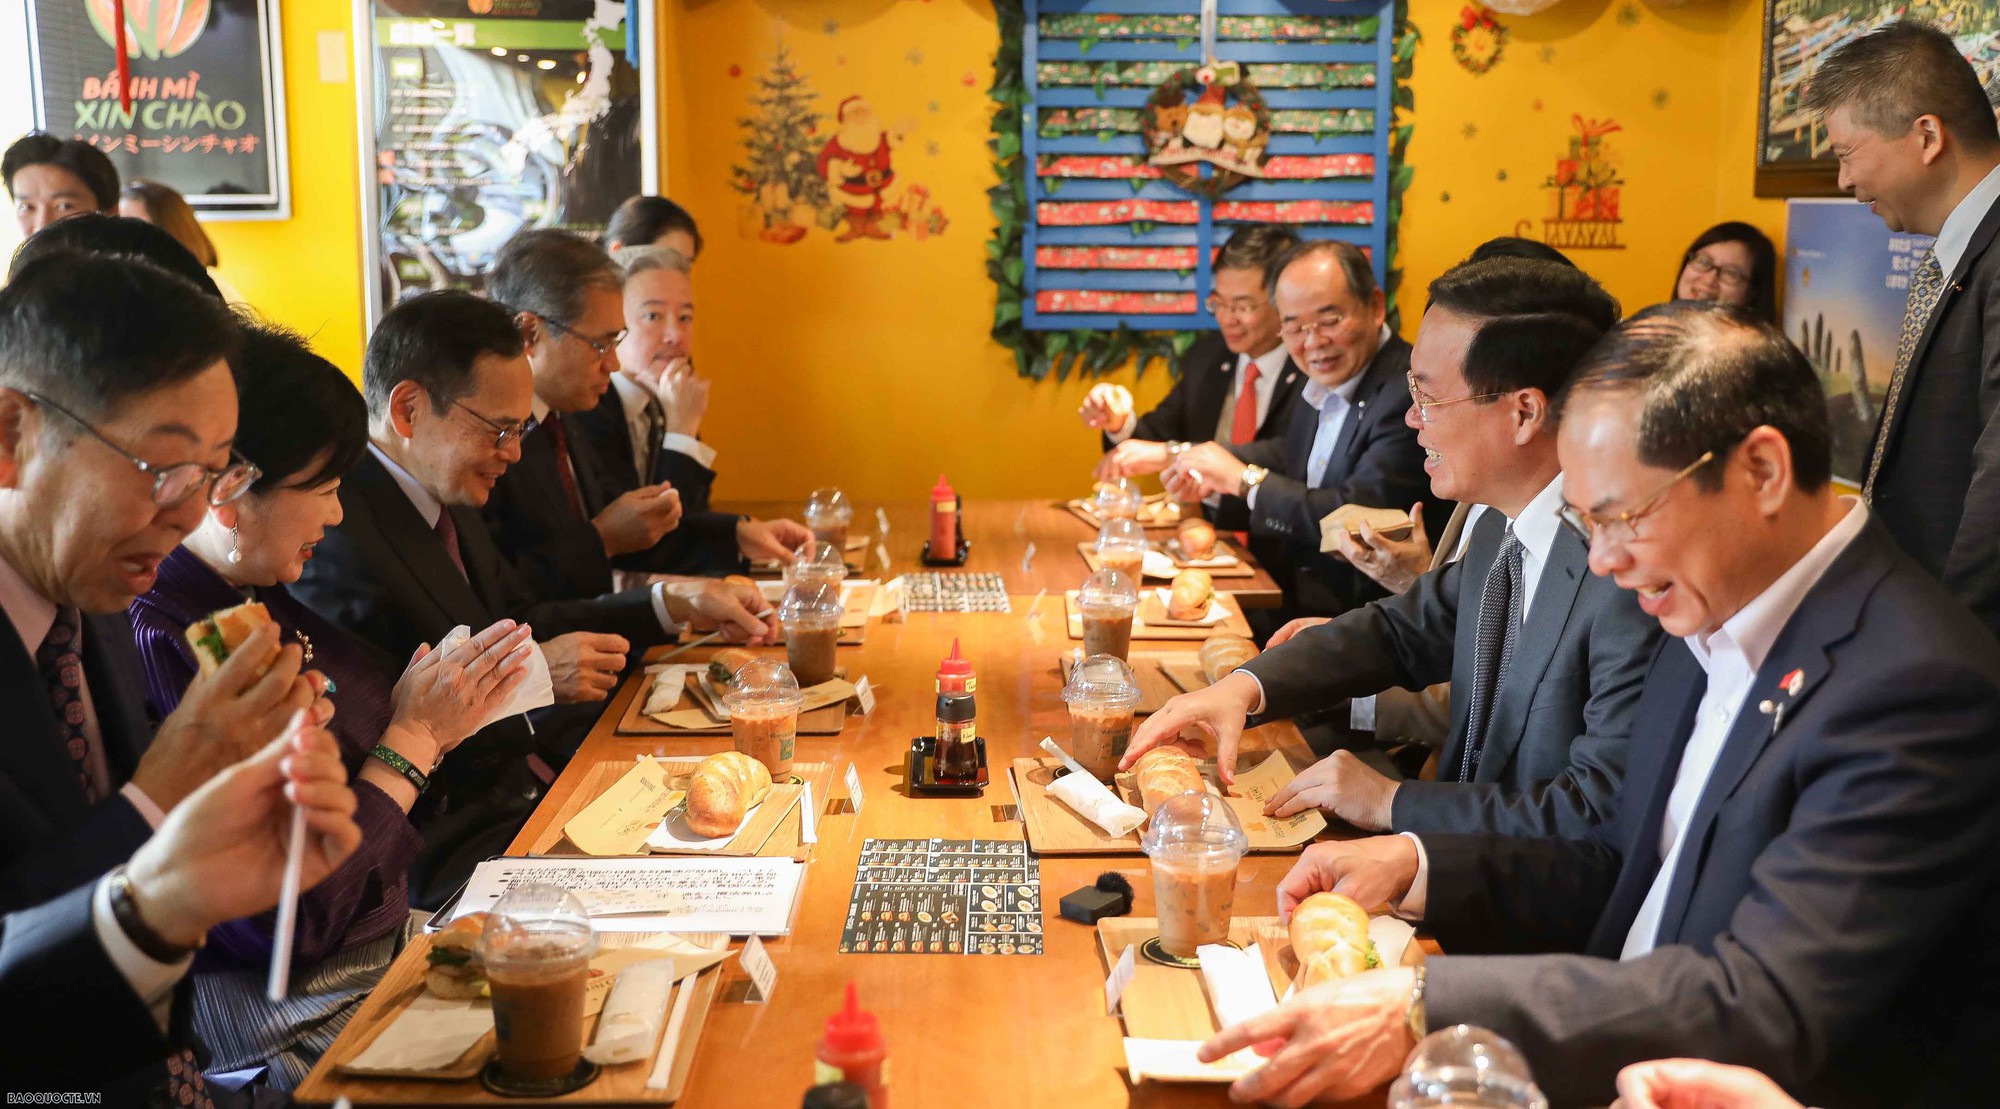 Chủ tịch nước và các quan chức Nhật Bản thưởng thức bánh mì, cafe Việt giữa Tokyo - Ảnh 4.